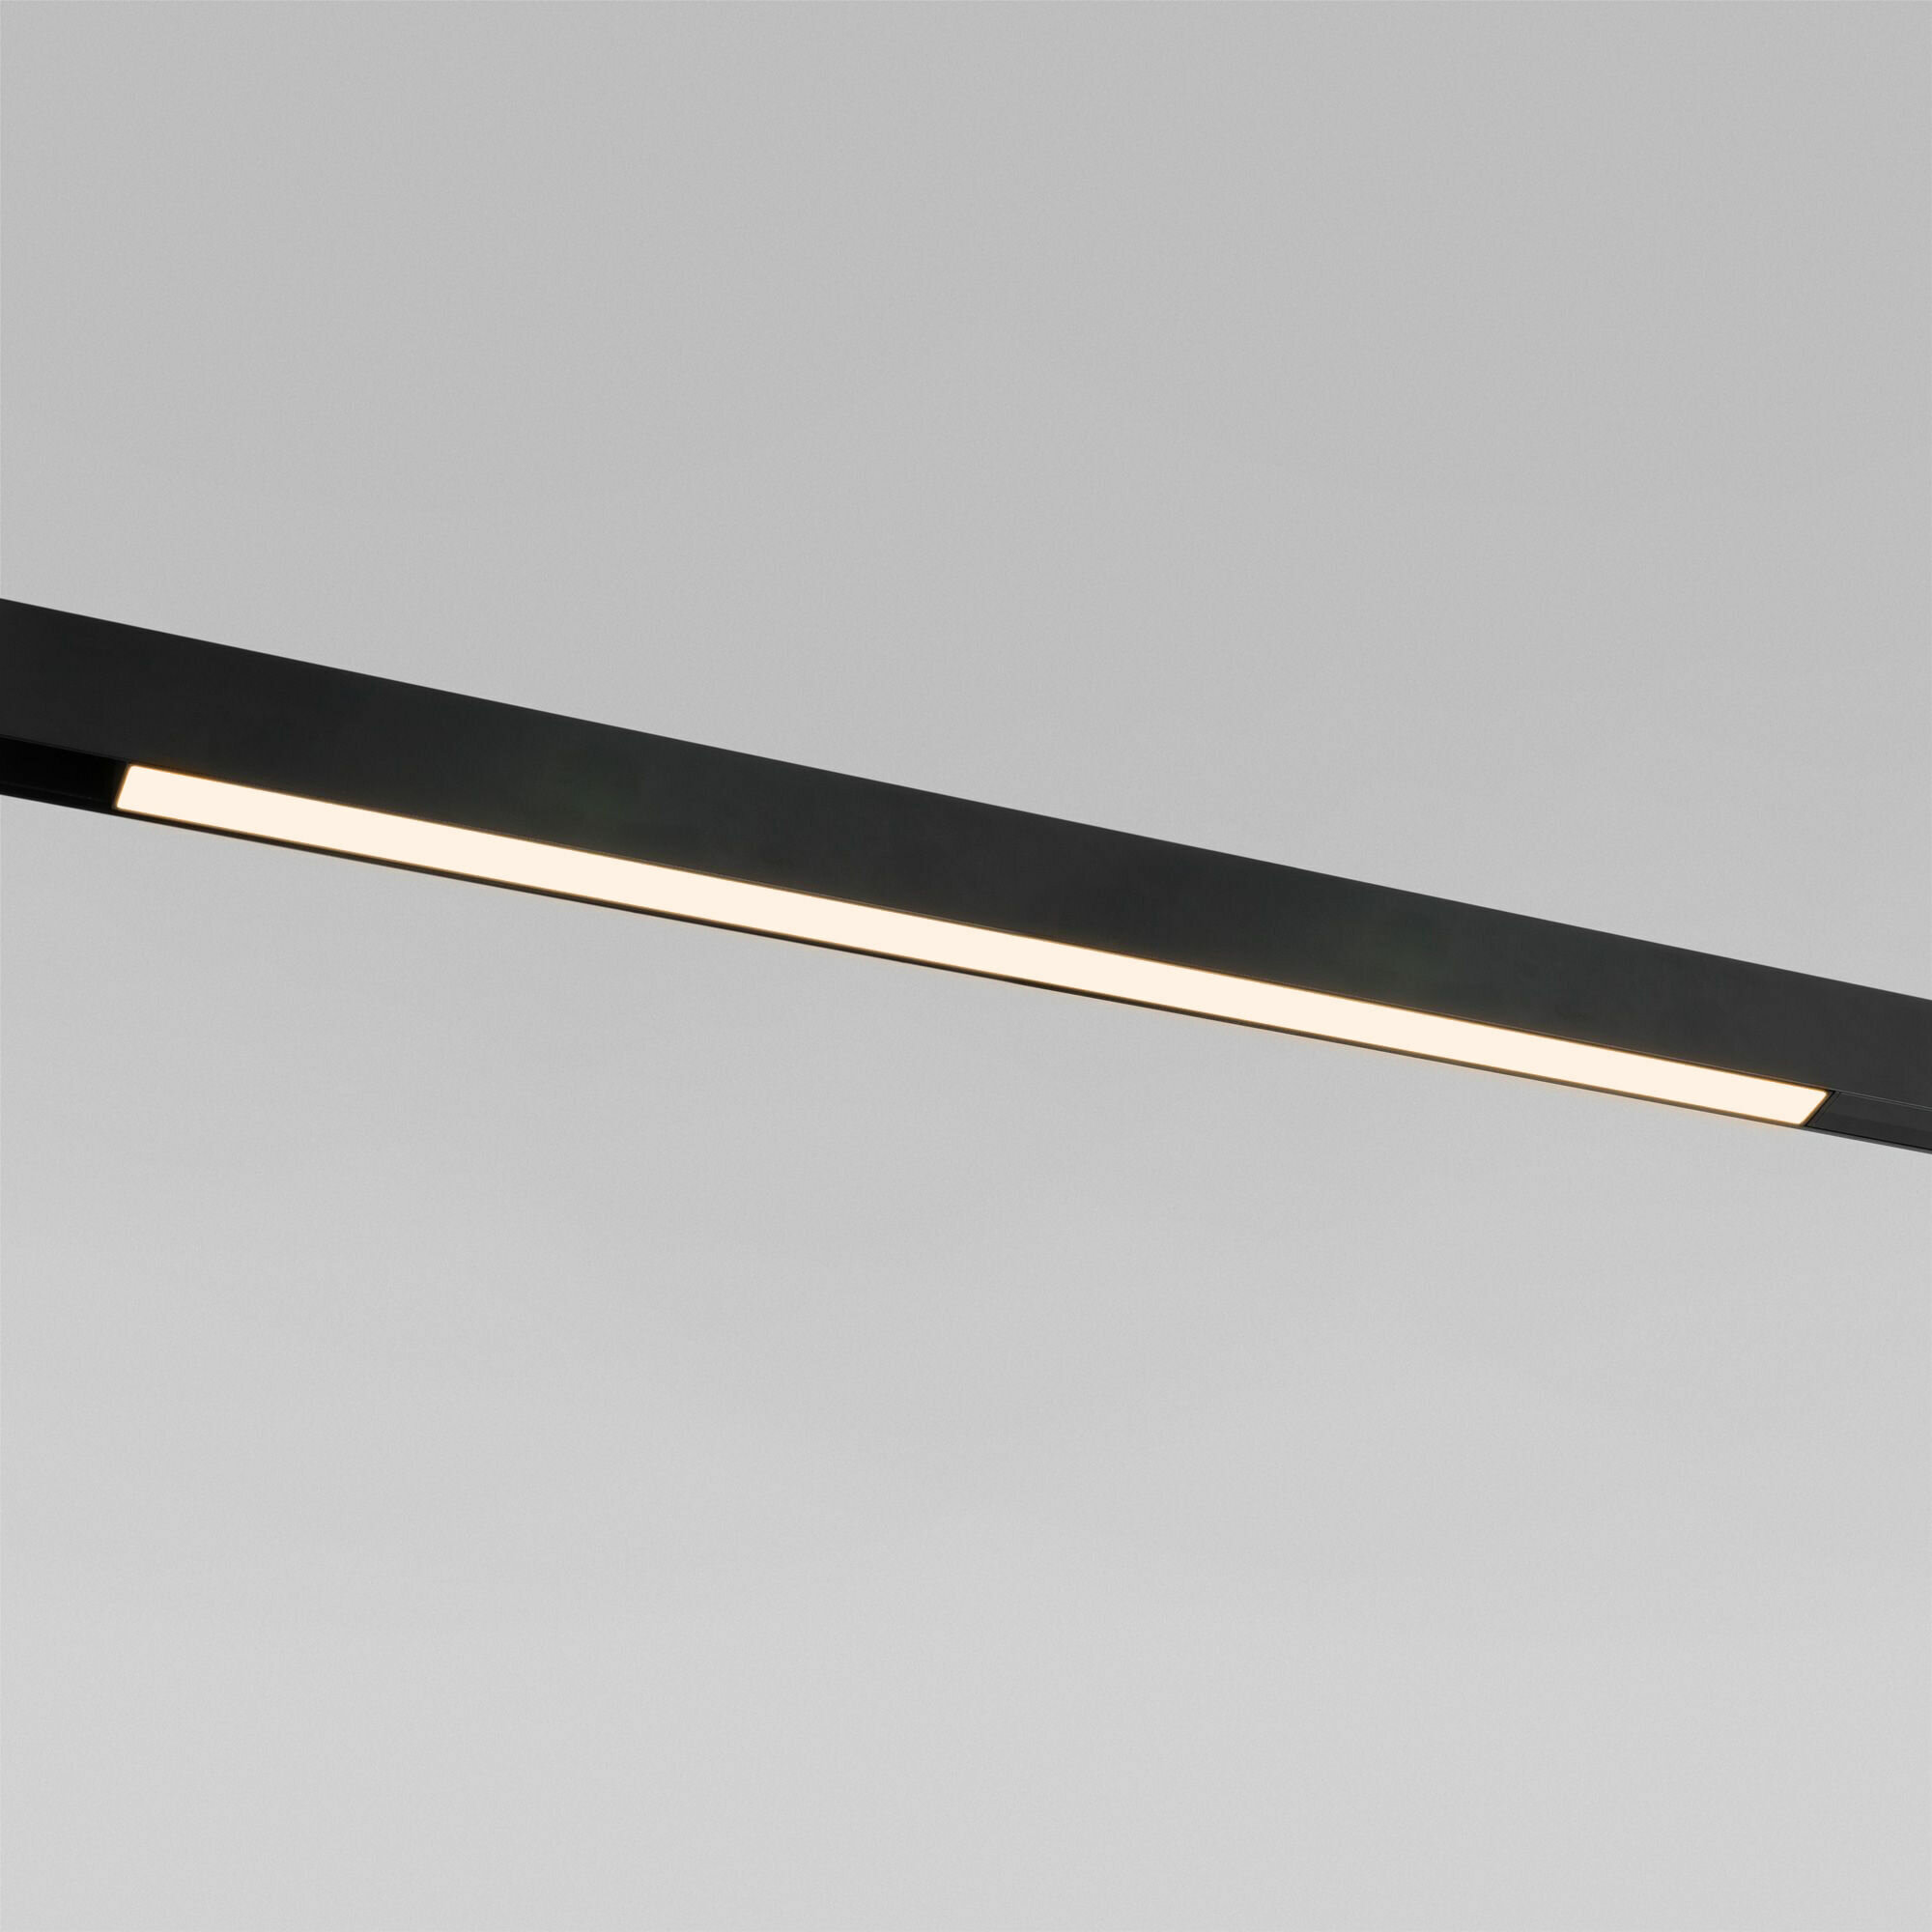 Трековый светодиодный светильник Elektrostandard Slim Magnetic L02 85002/01, 20 Вт, 3000 K, цвет черный